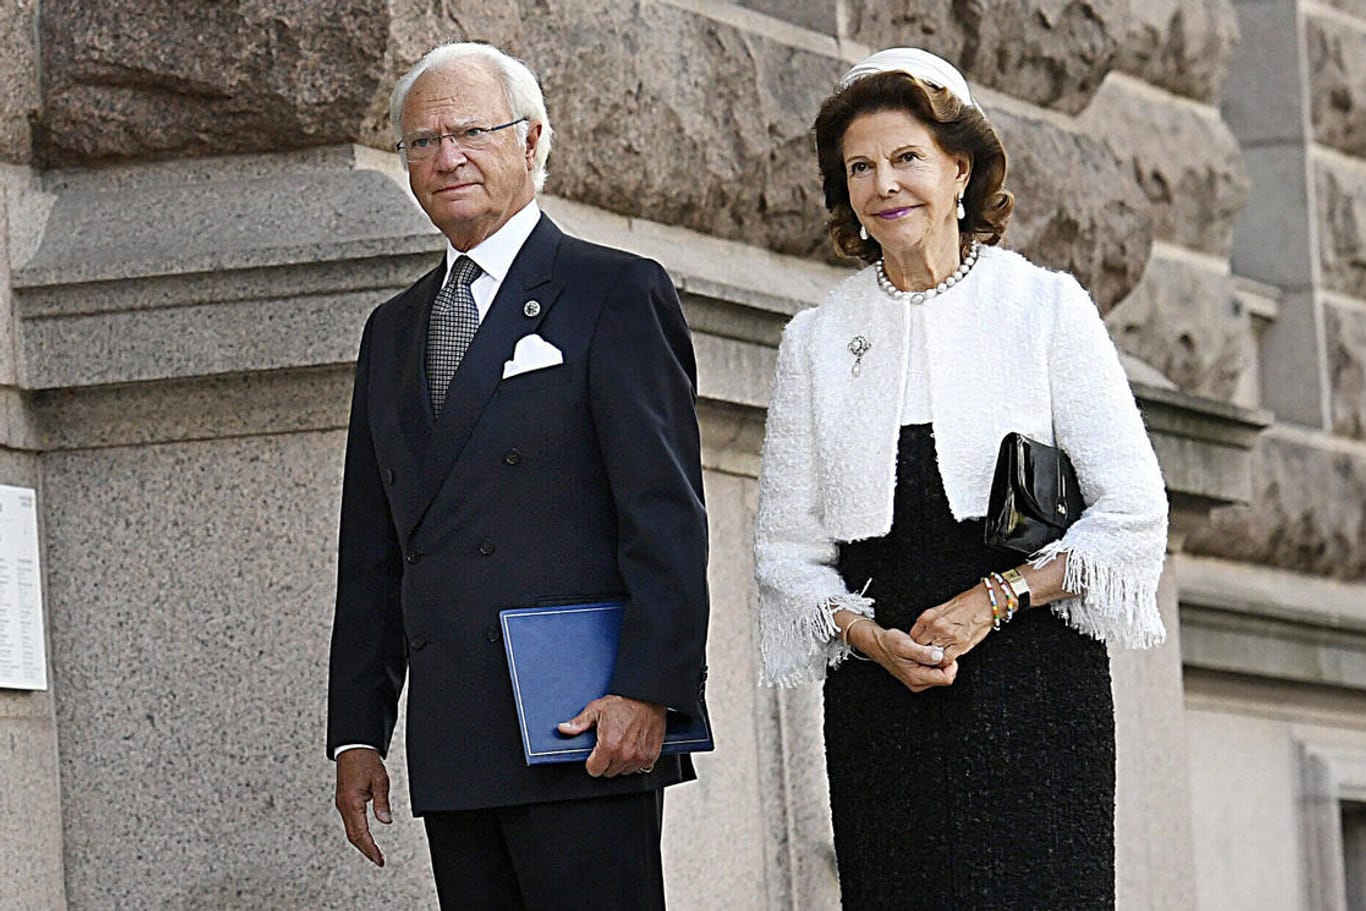 Schwedens König Carl XVI und seine Frau, Königin Sofia bei einem öffentlichen Auftritt 2020.